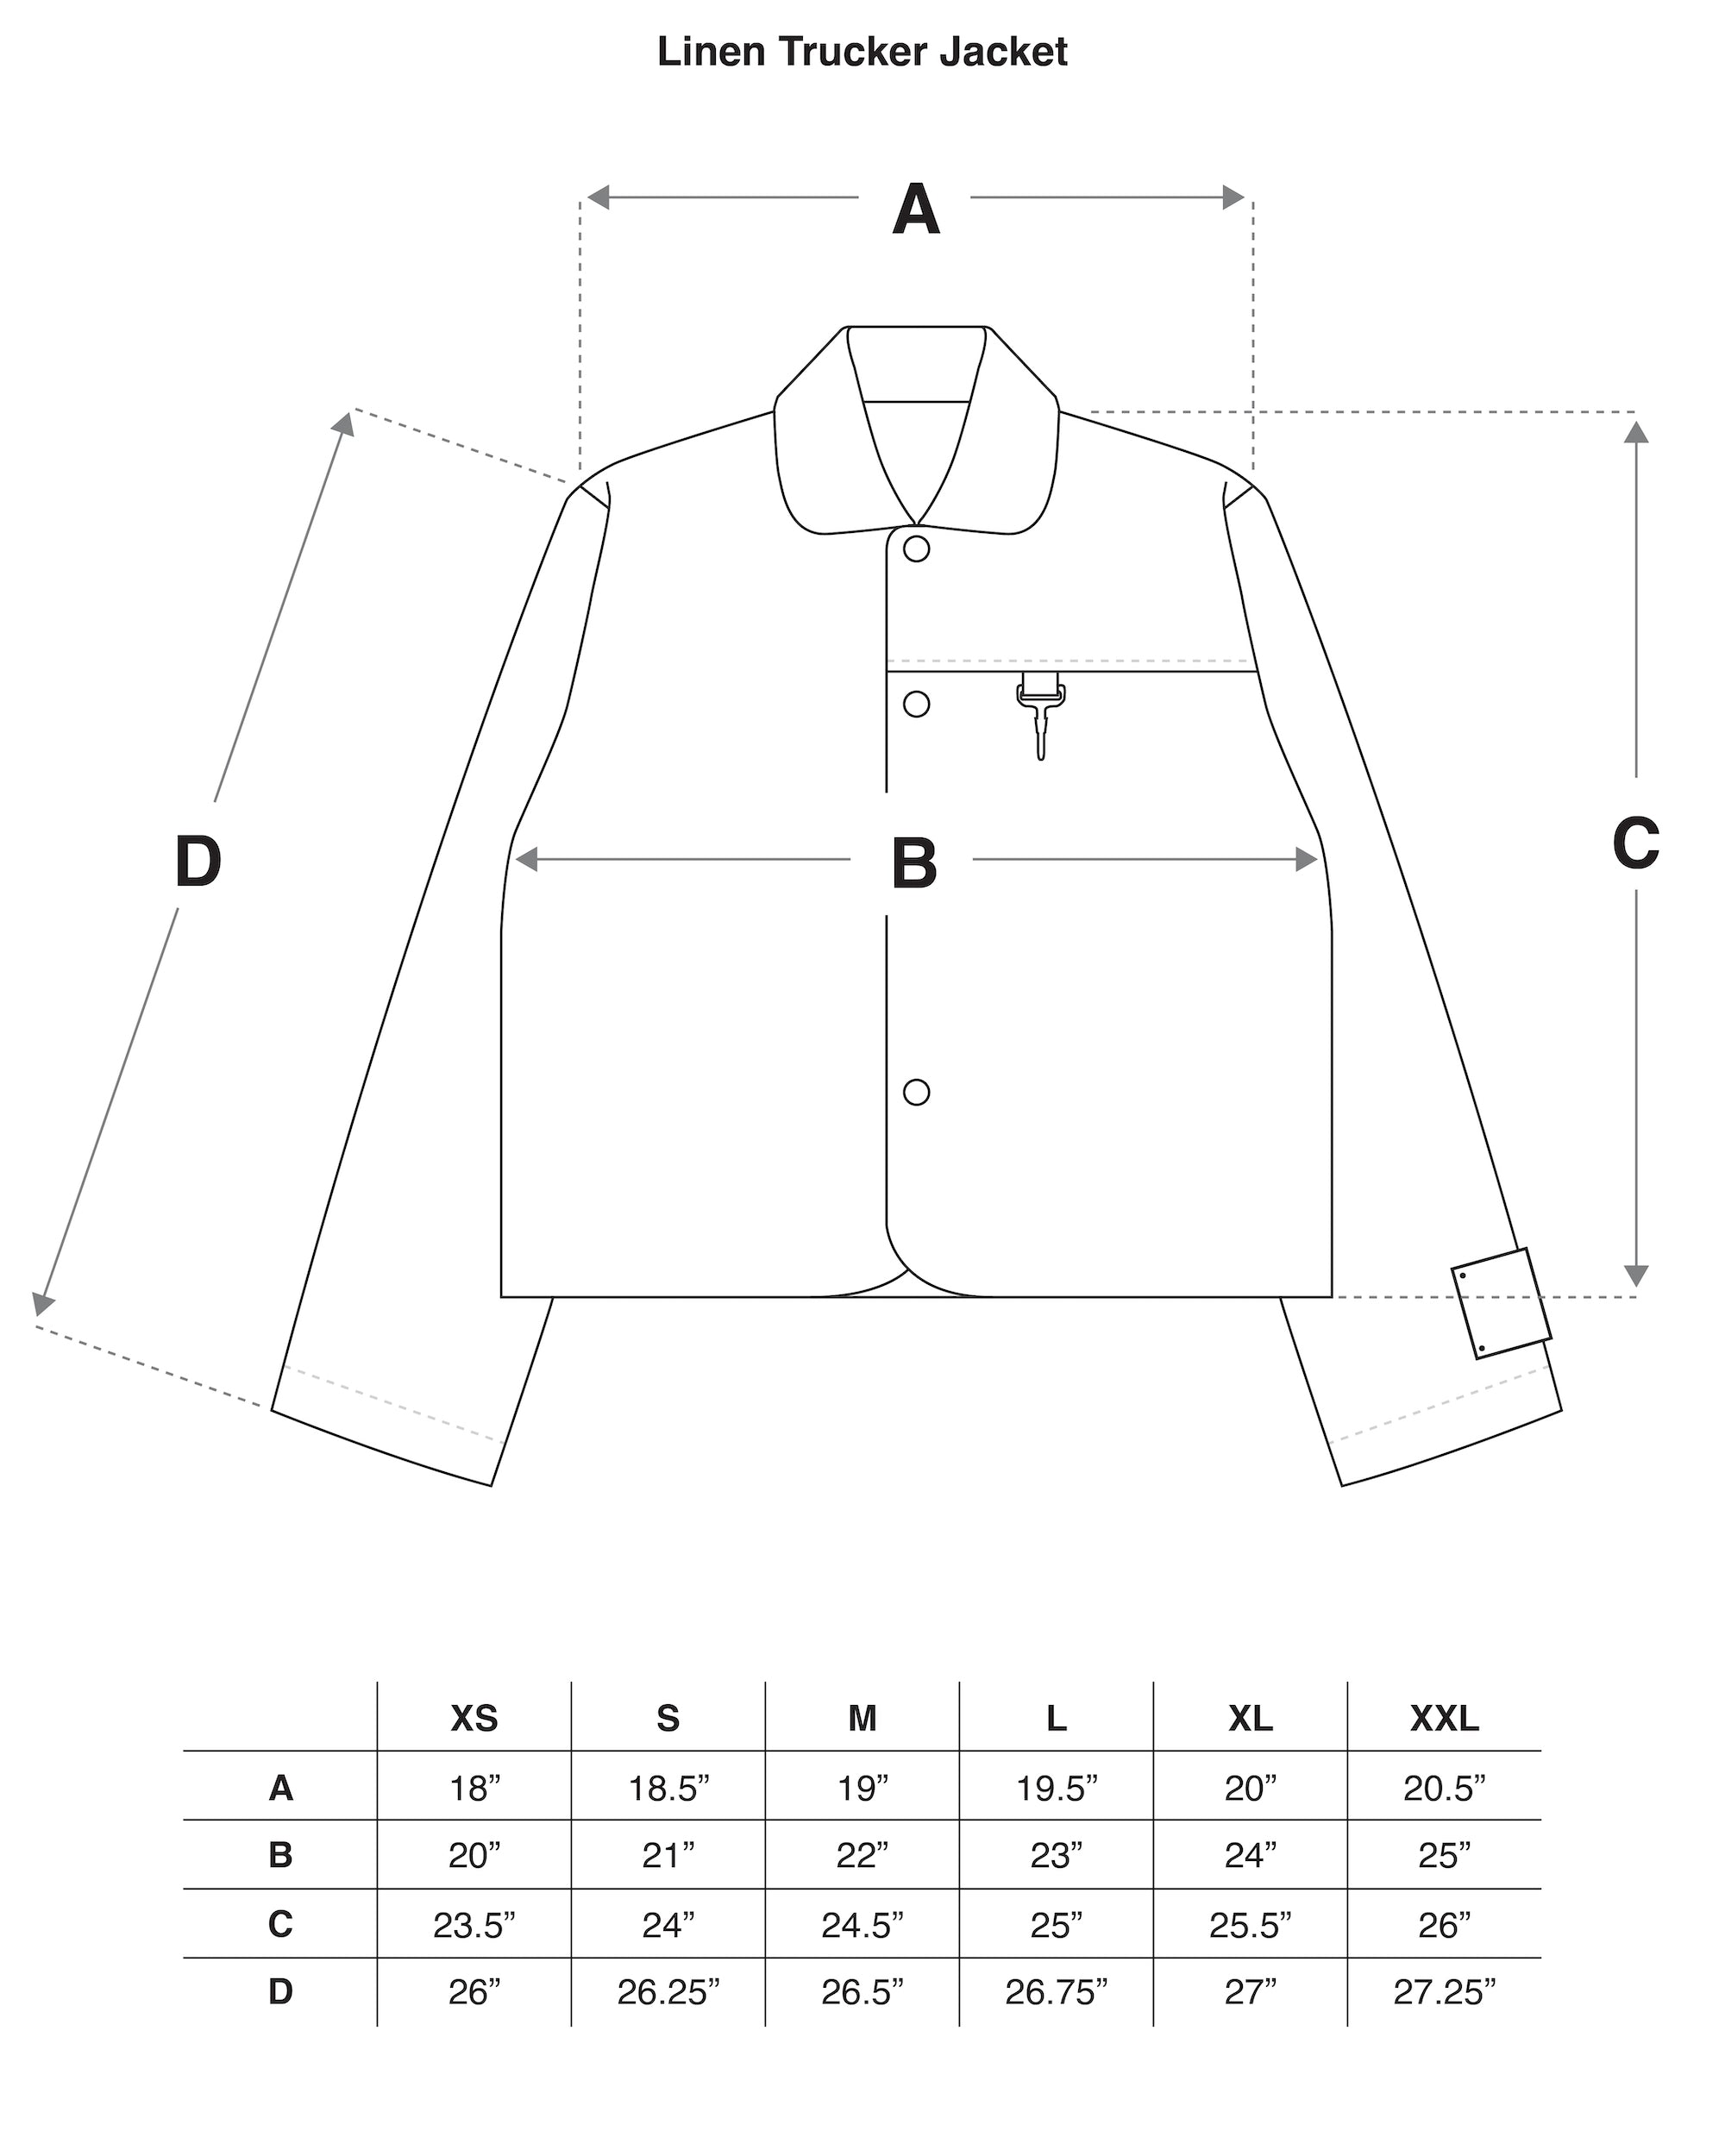 Trucker Jacket in White Linen Size Guide